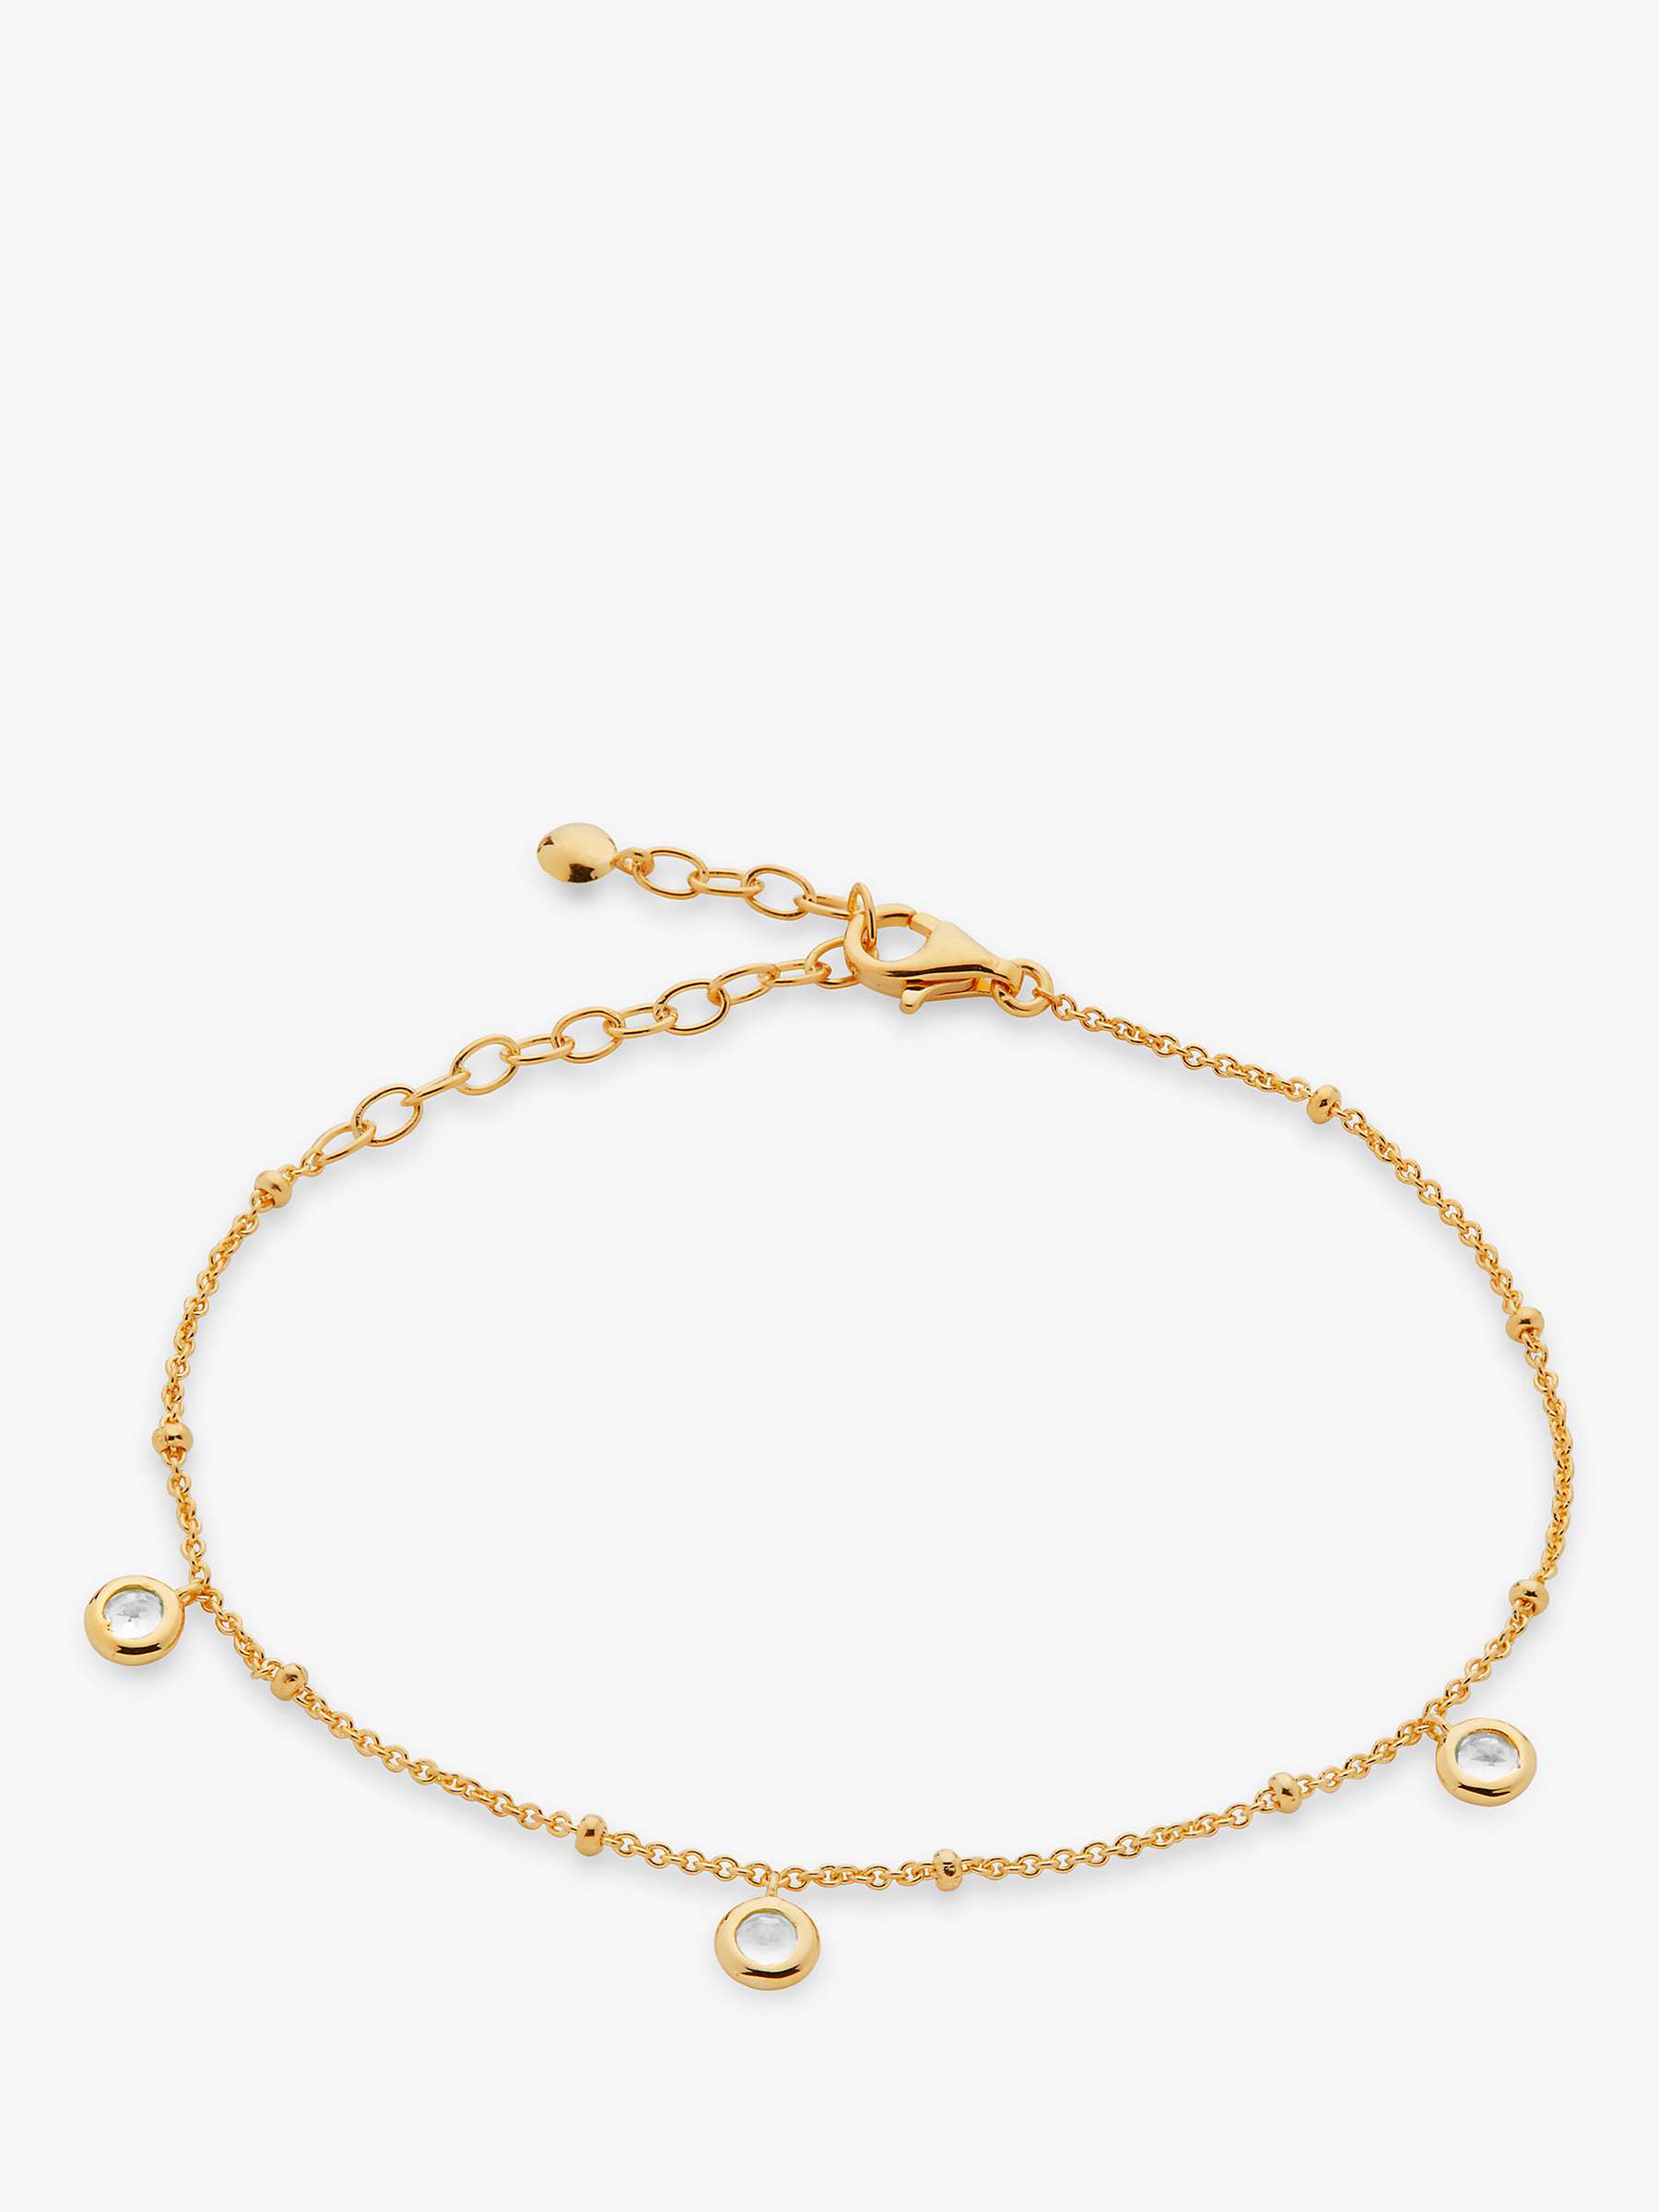 Buy Monica Vinader Mini Gem Chain Bracelet, Gold/White Topaz Online at johnlewis.com